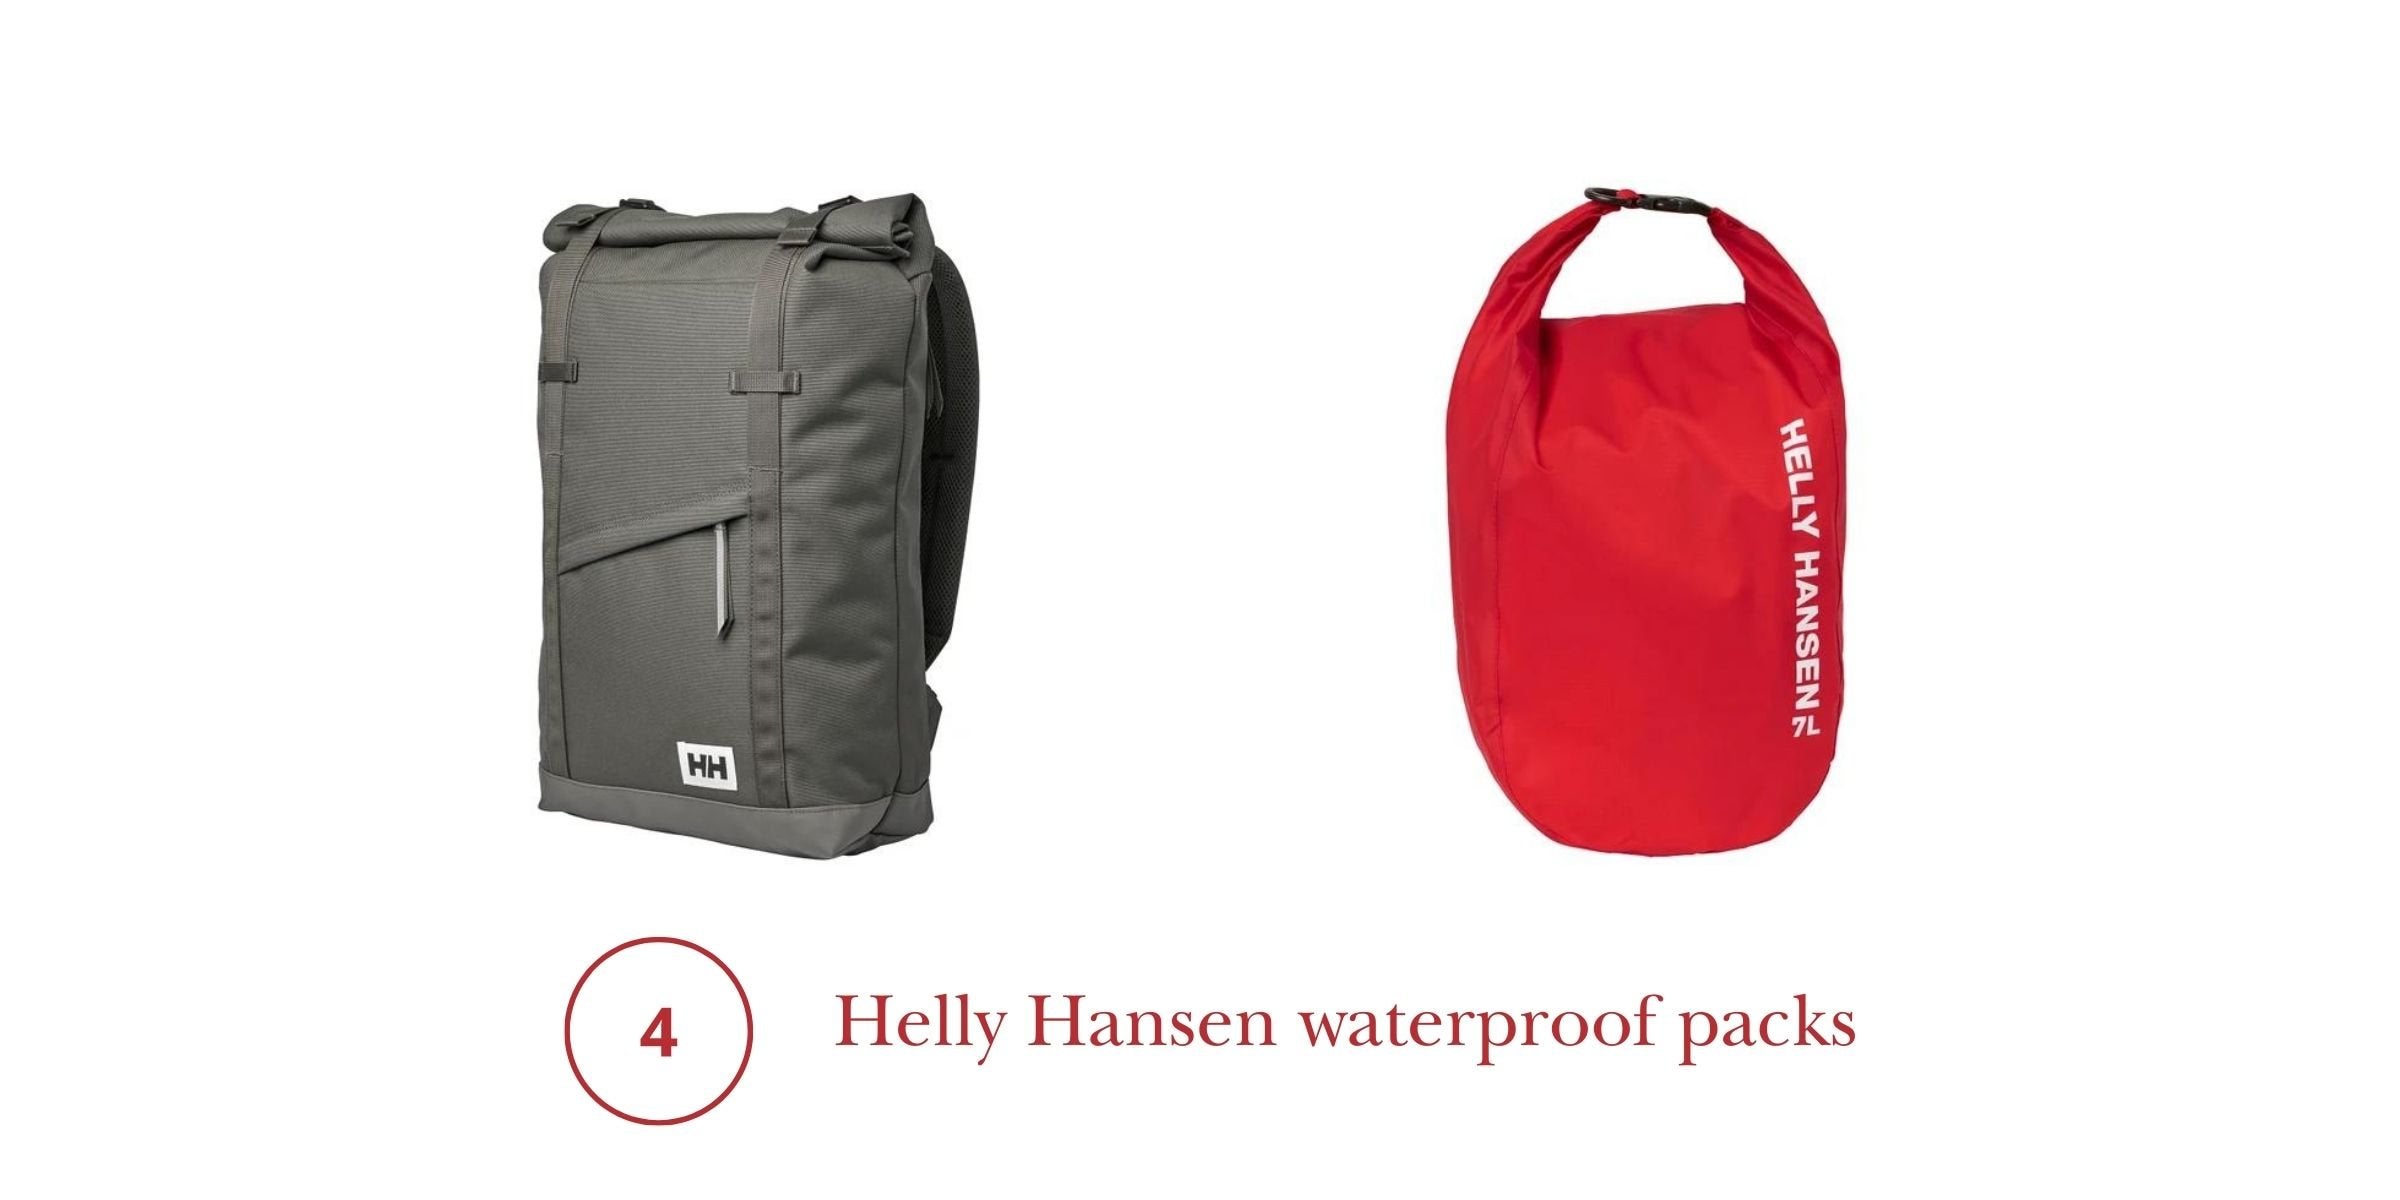 Helly Hansen Waterproof Packs